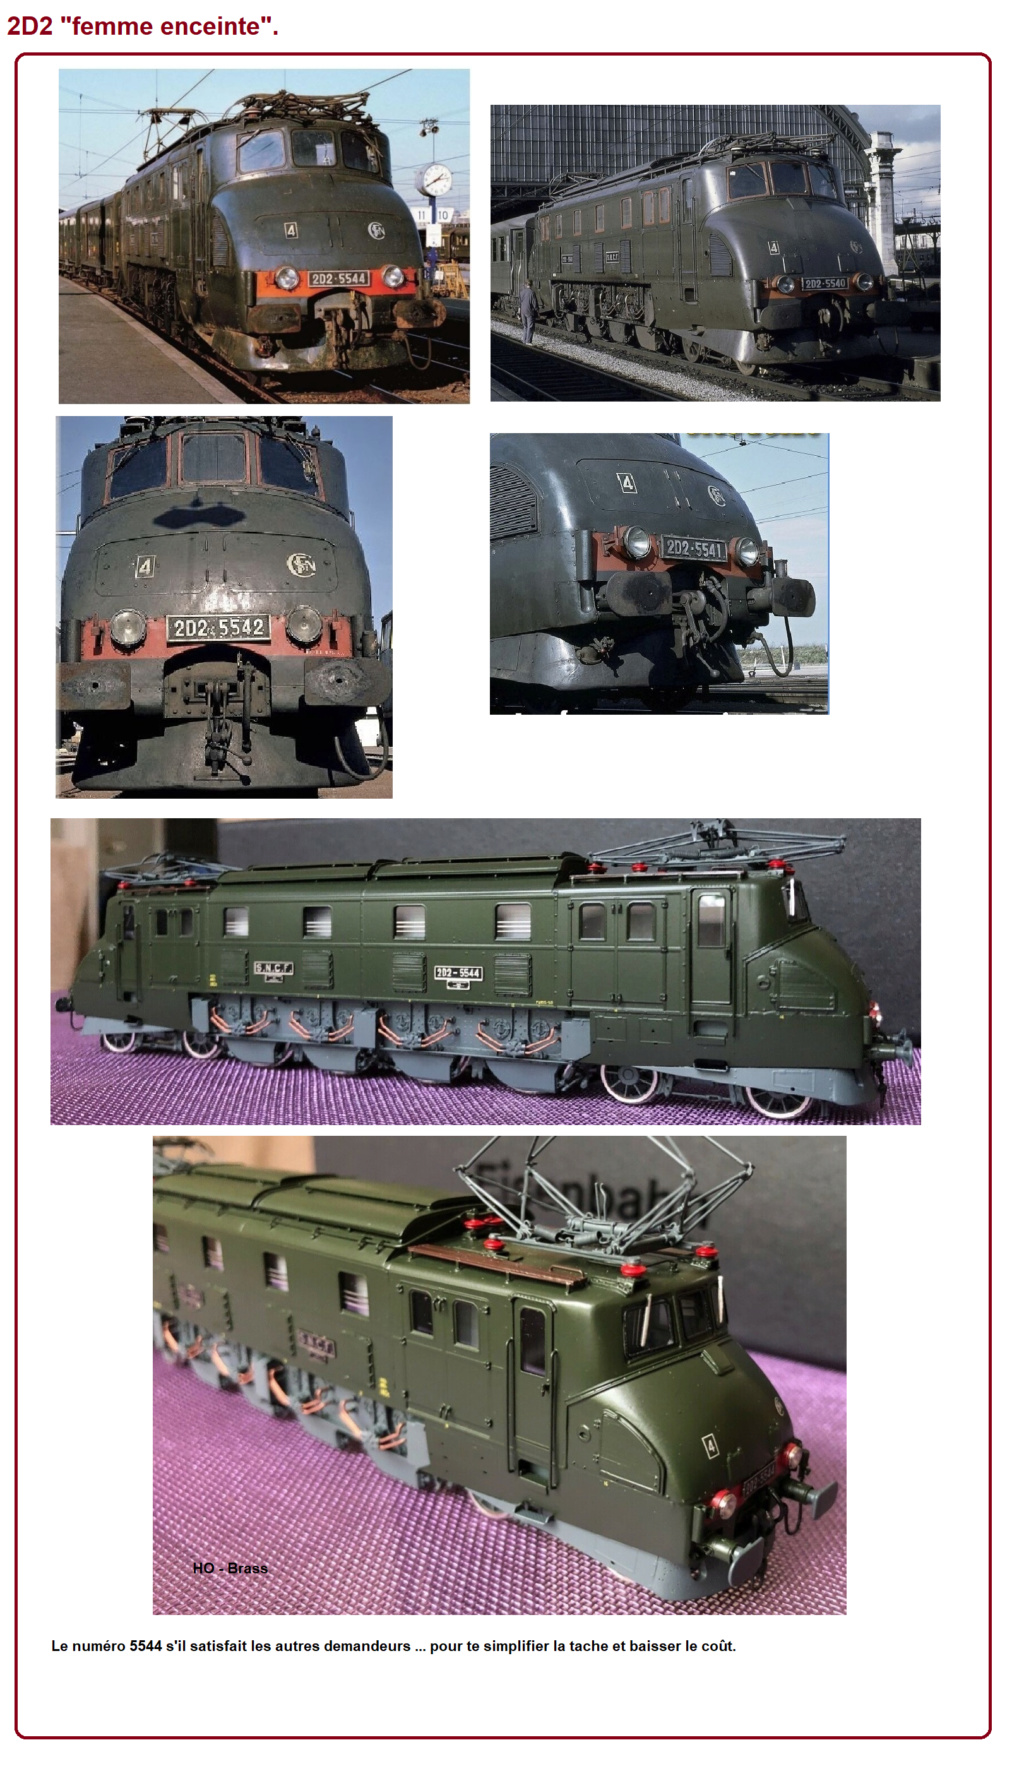 [HFR160] Plaques de locomotives - Page 9 2d2_fe10